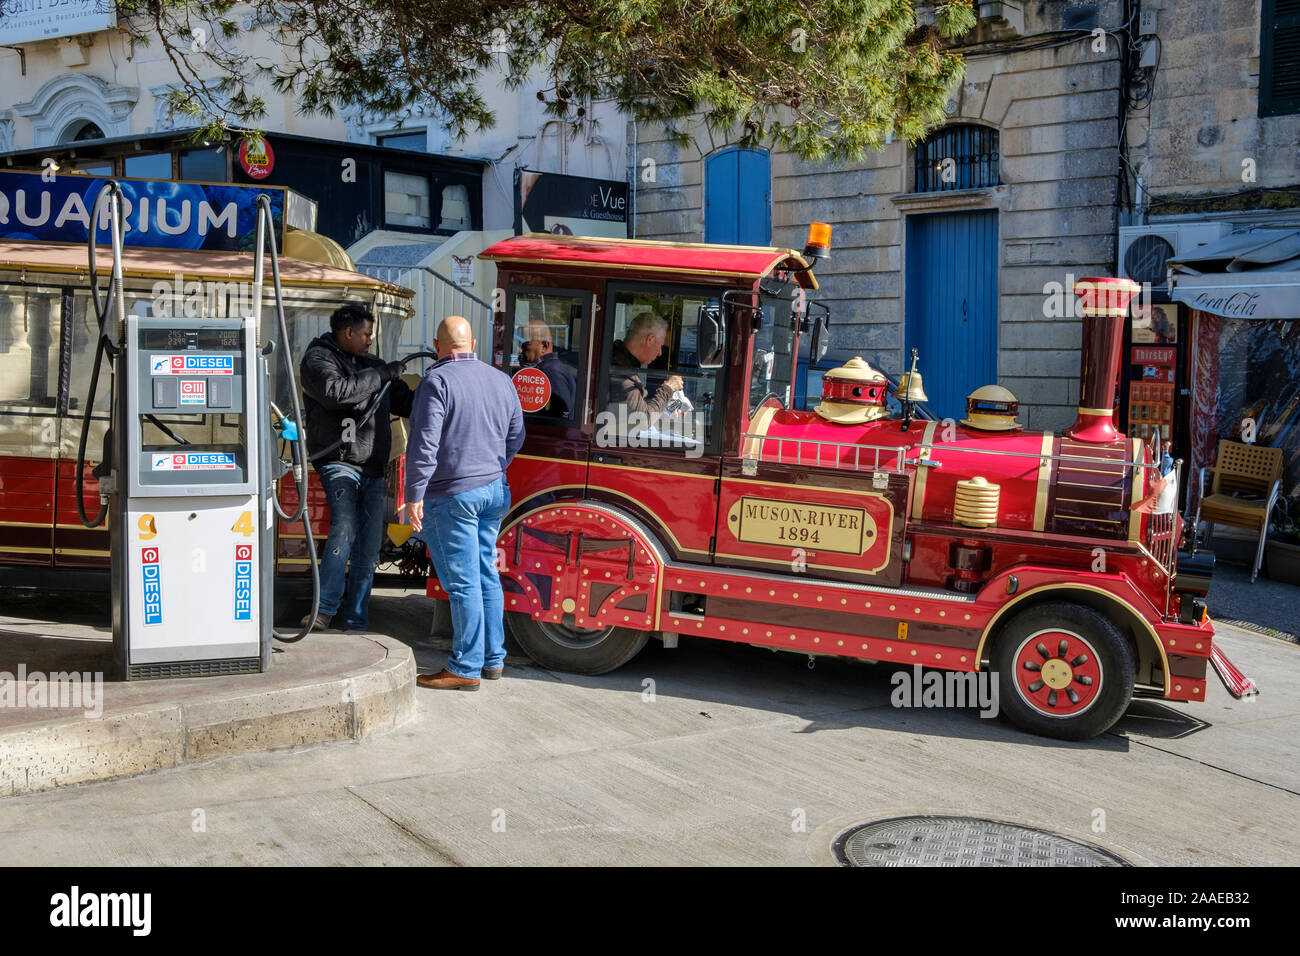 Remplir jusqu'à la station d'essence - la route train qui emmène les touristes autour de Mdina et Rabat à Malte Banque D'Images